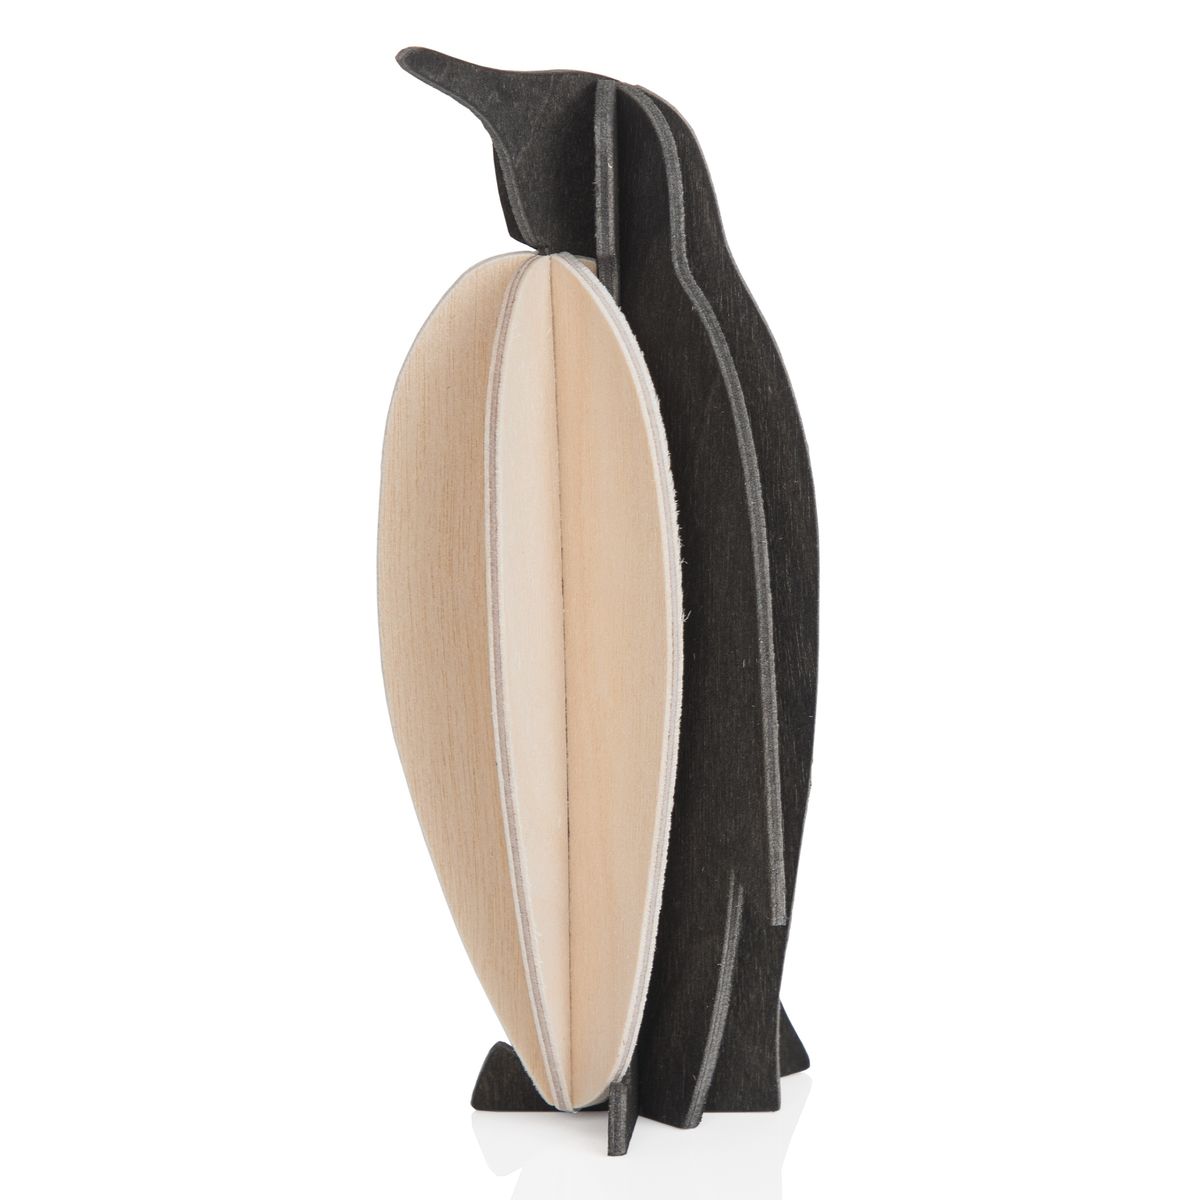 Le pingouin : carte pour construire un 3D en bois (M – couleurs noire et bois)